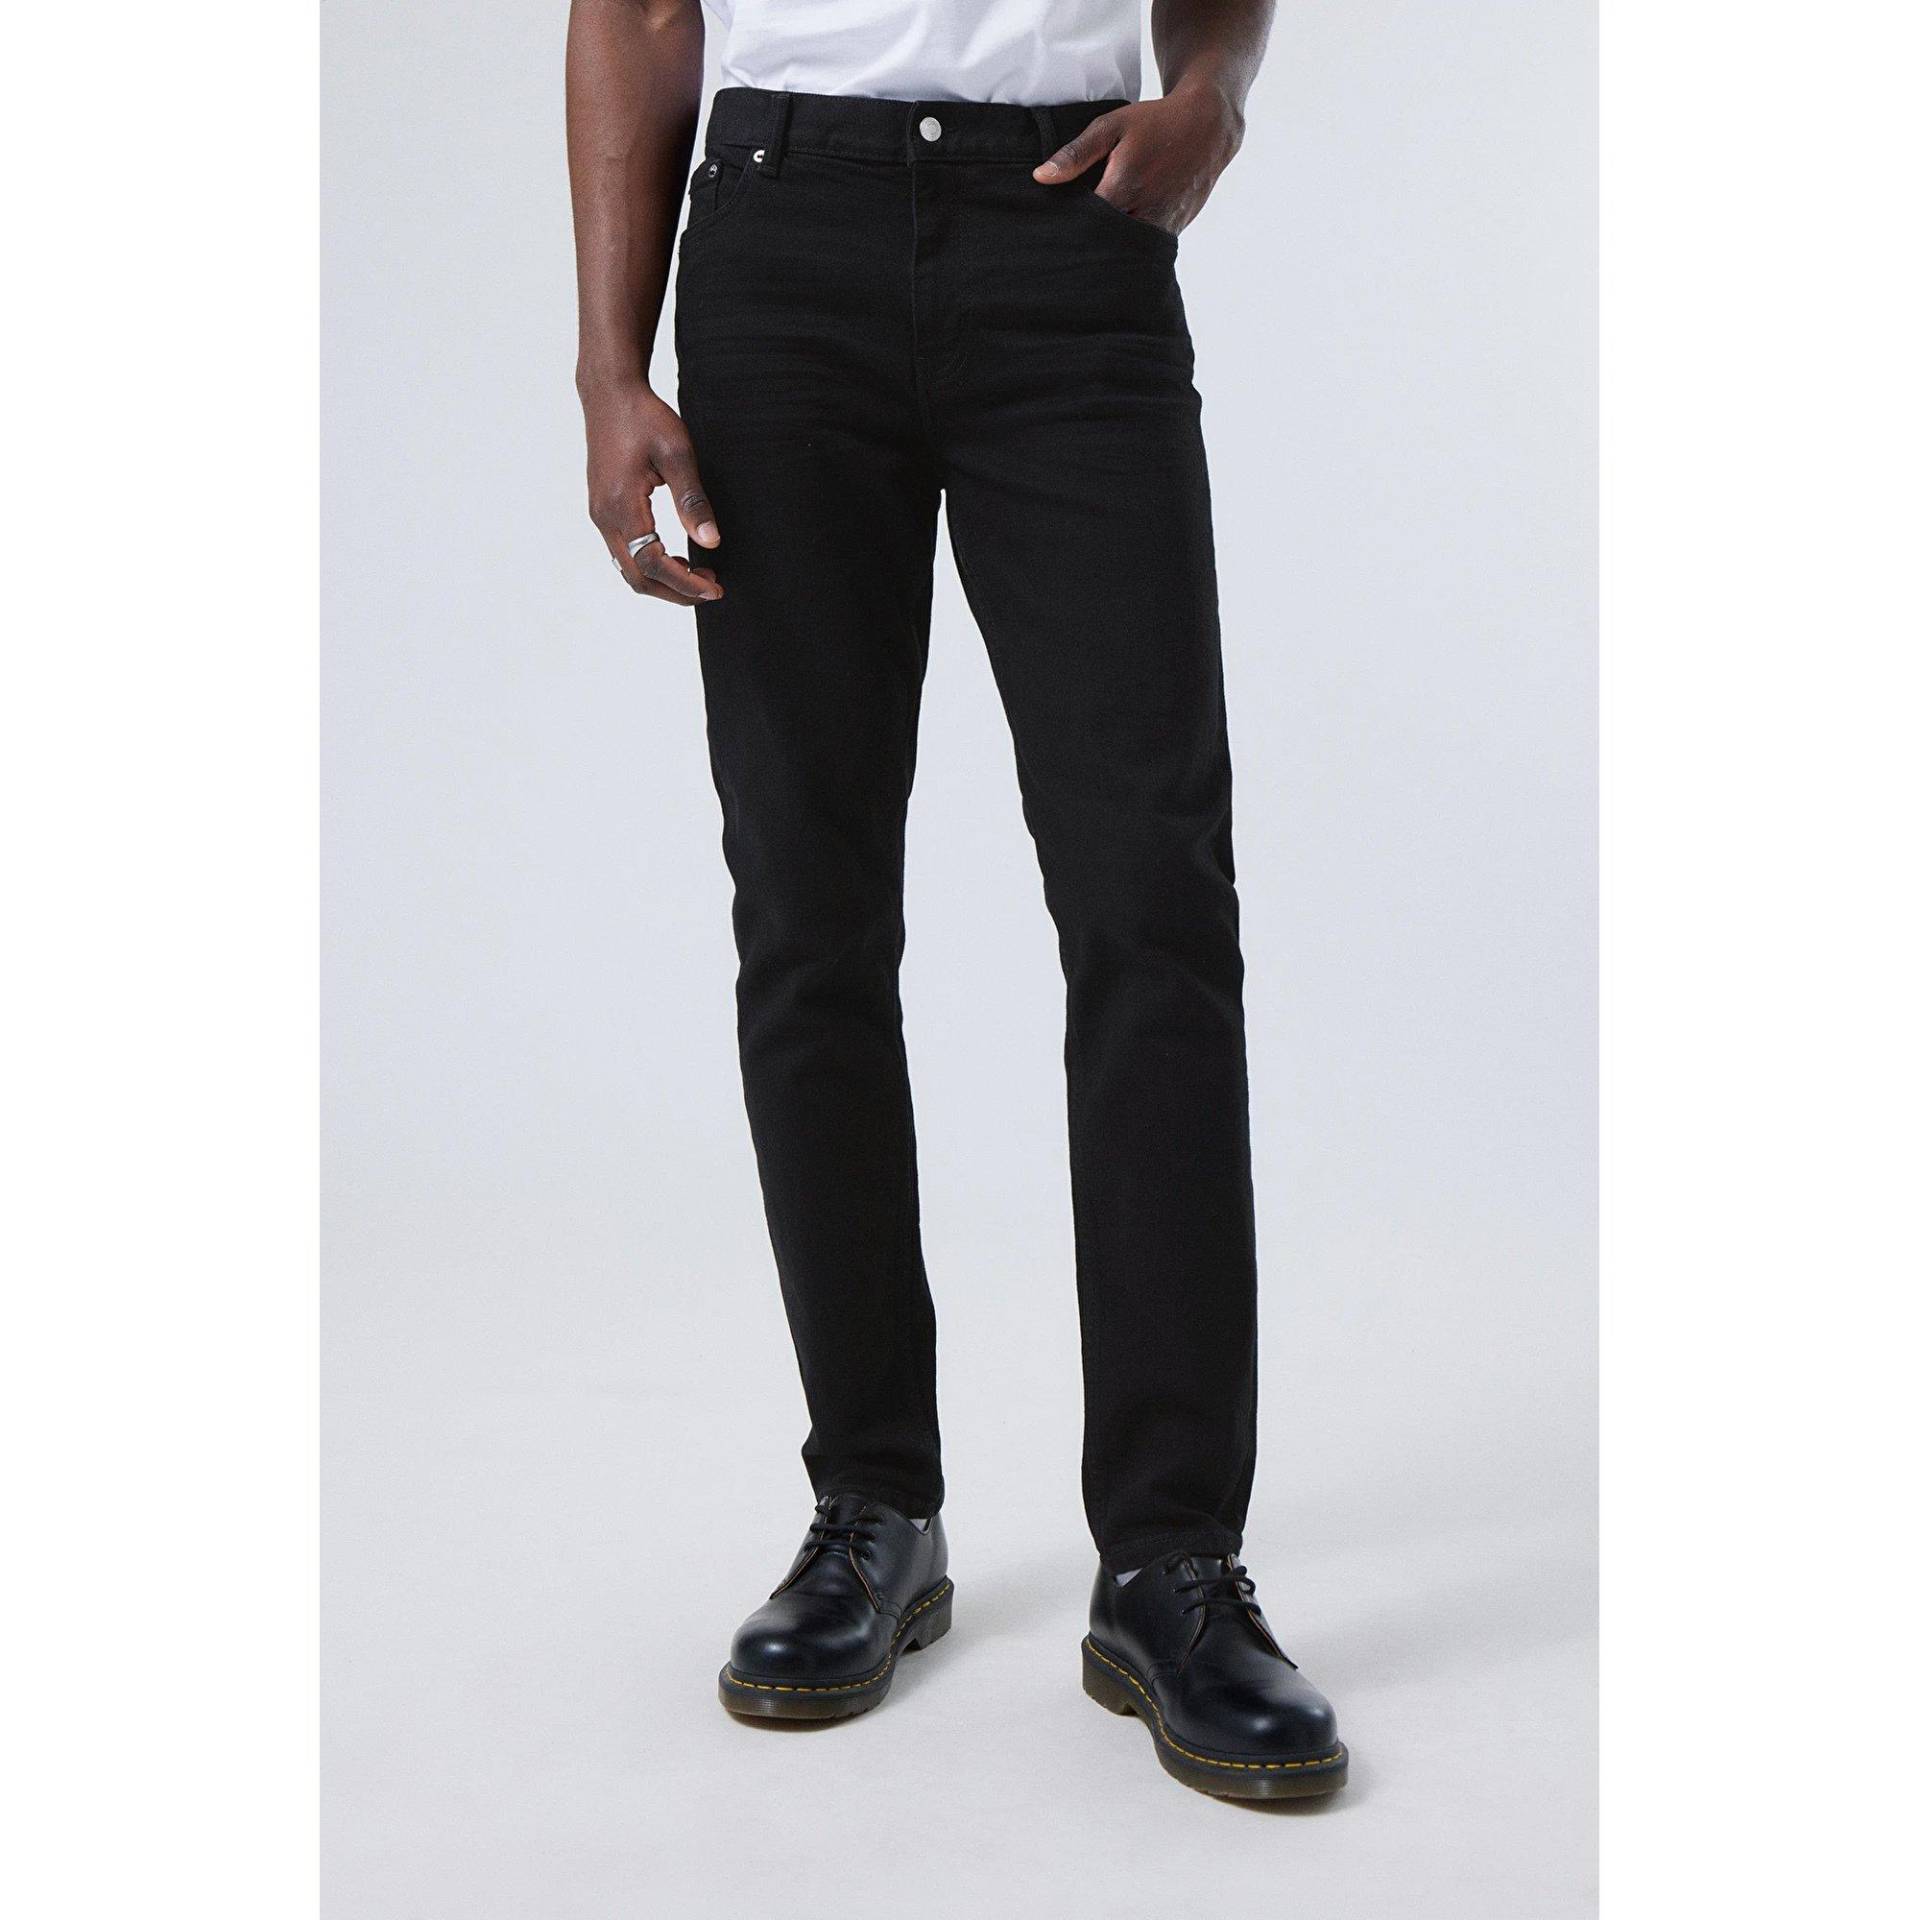 Jeans, Tapered Fit Herren Black L32/W29 von WEEKDAY